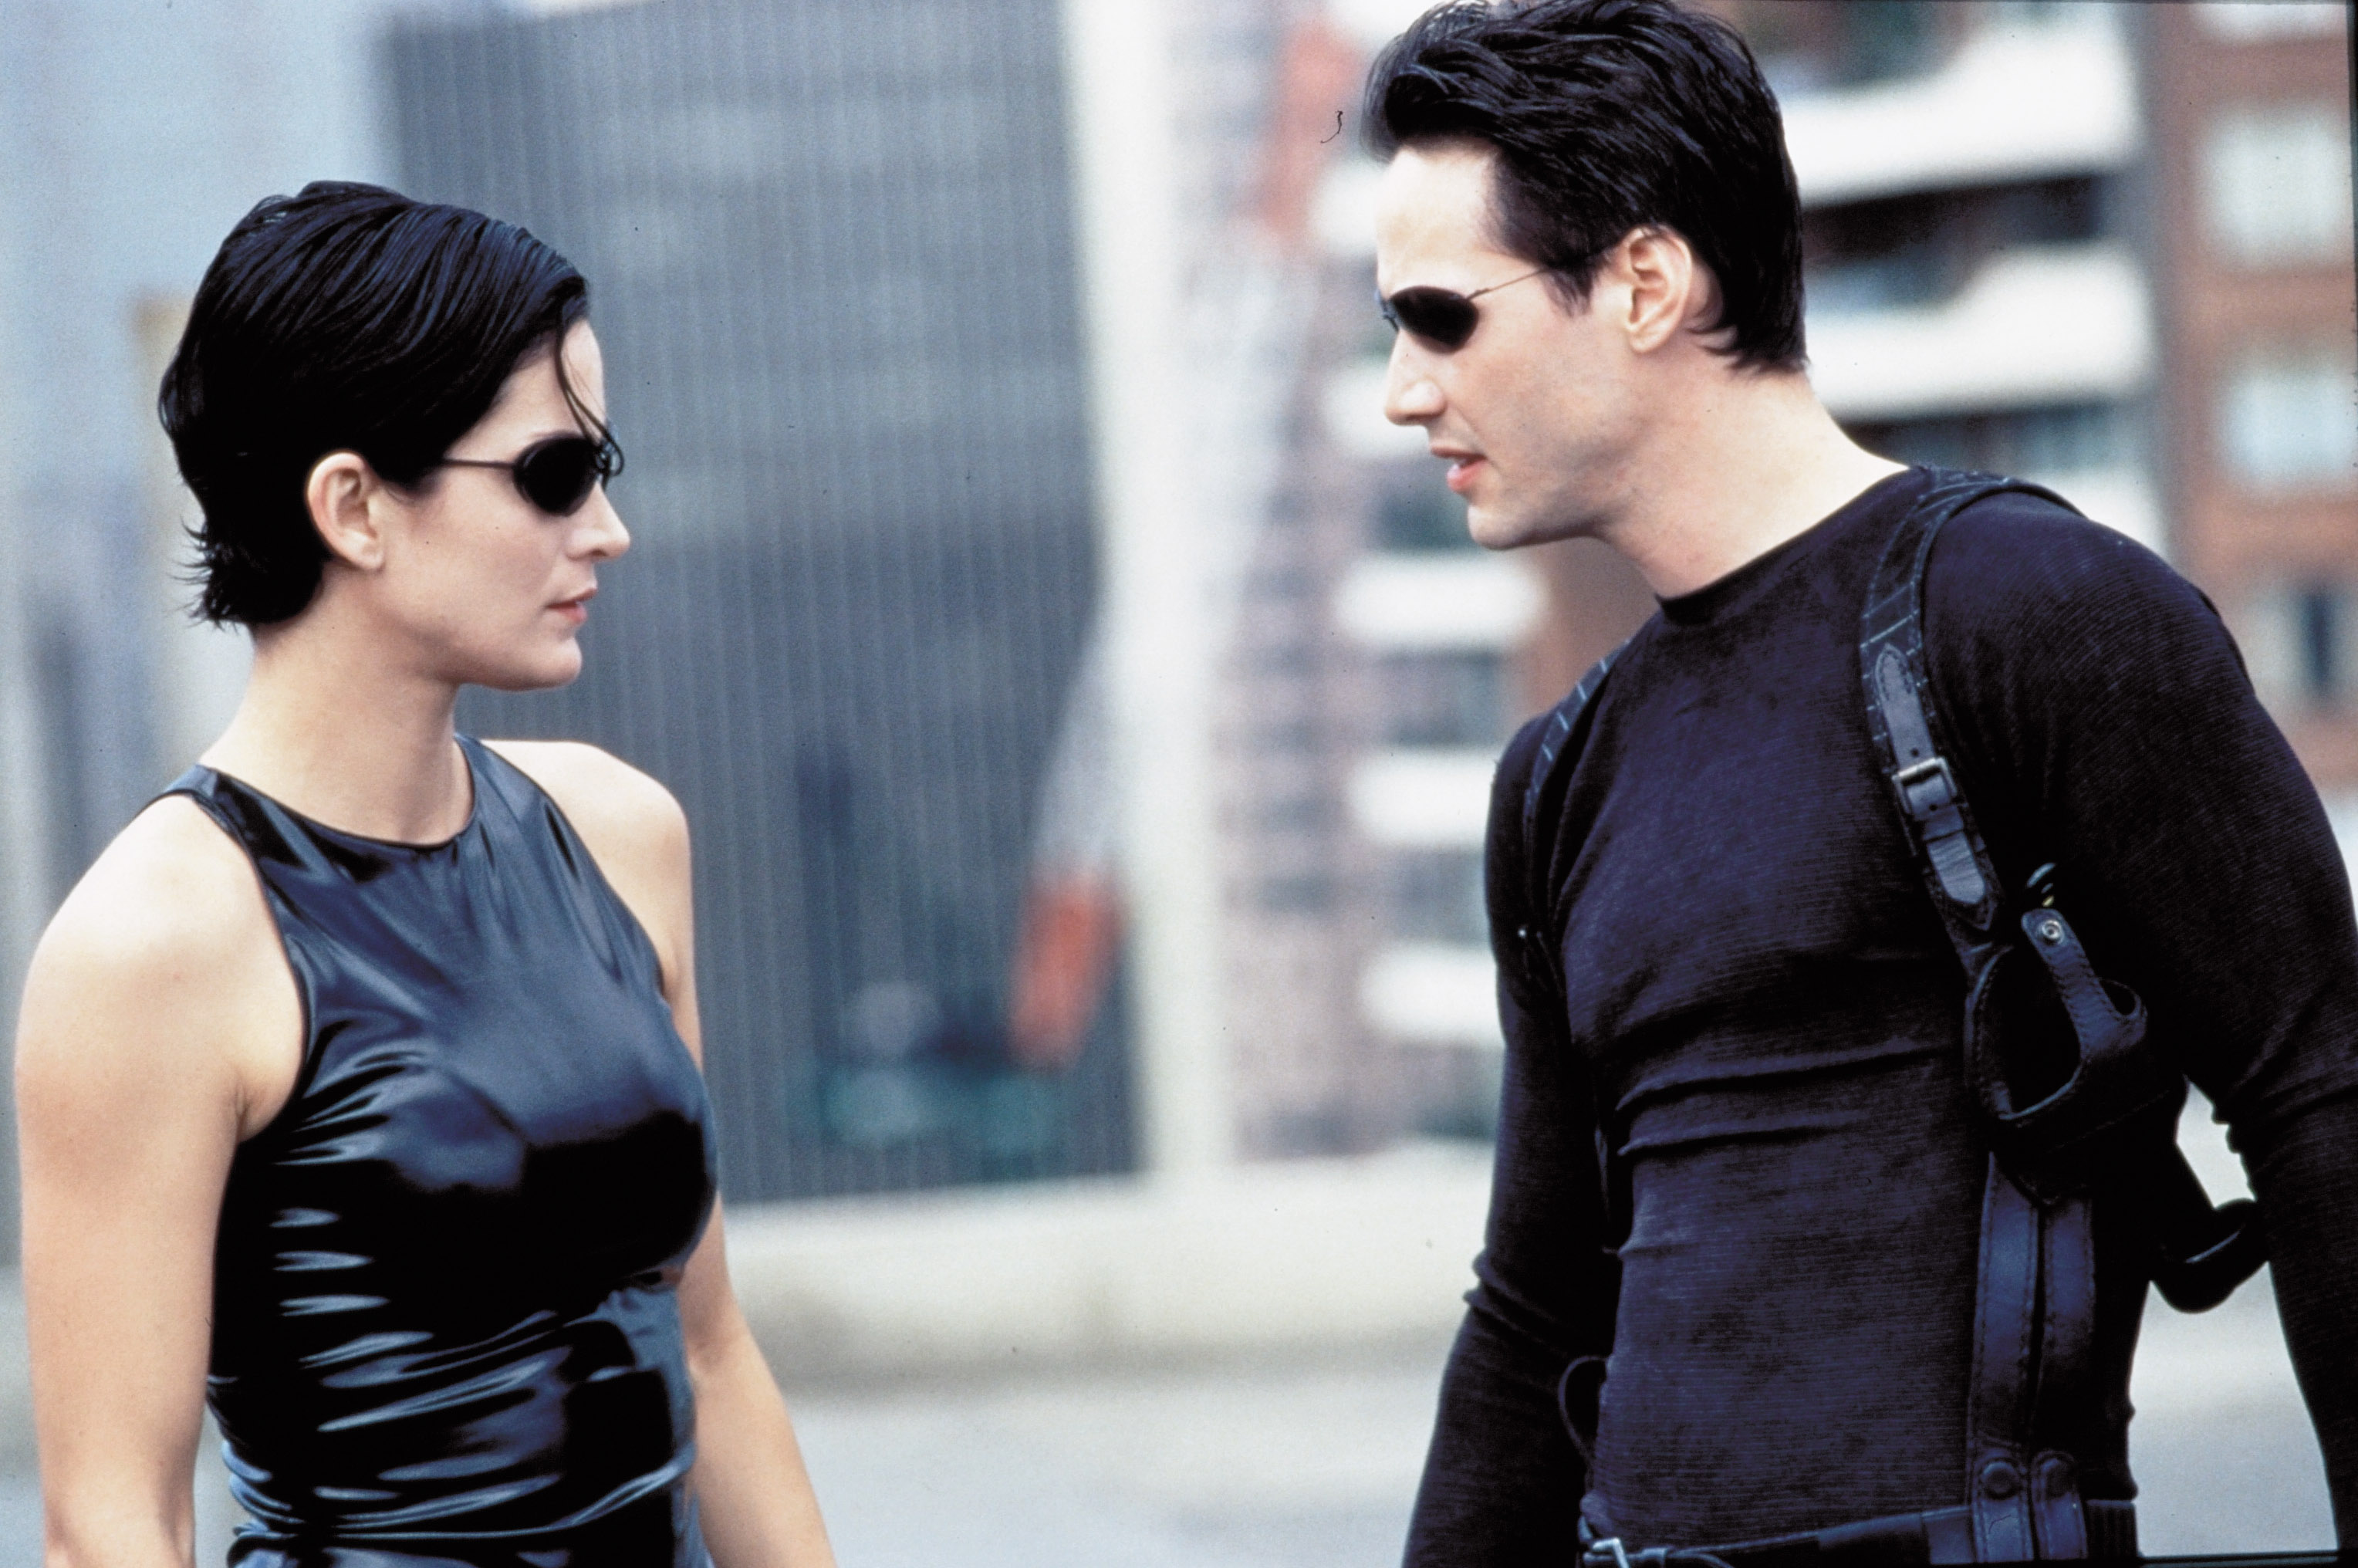 Forgatásnak álcázta Keanu Reeves az új Matrix stábbuliját - Blikk